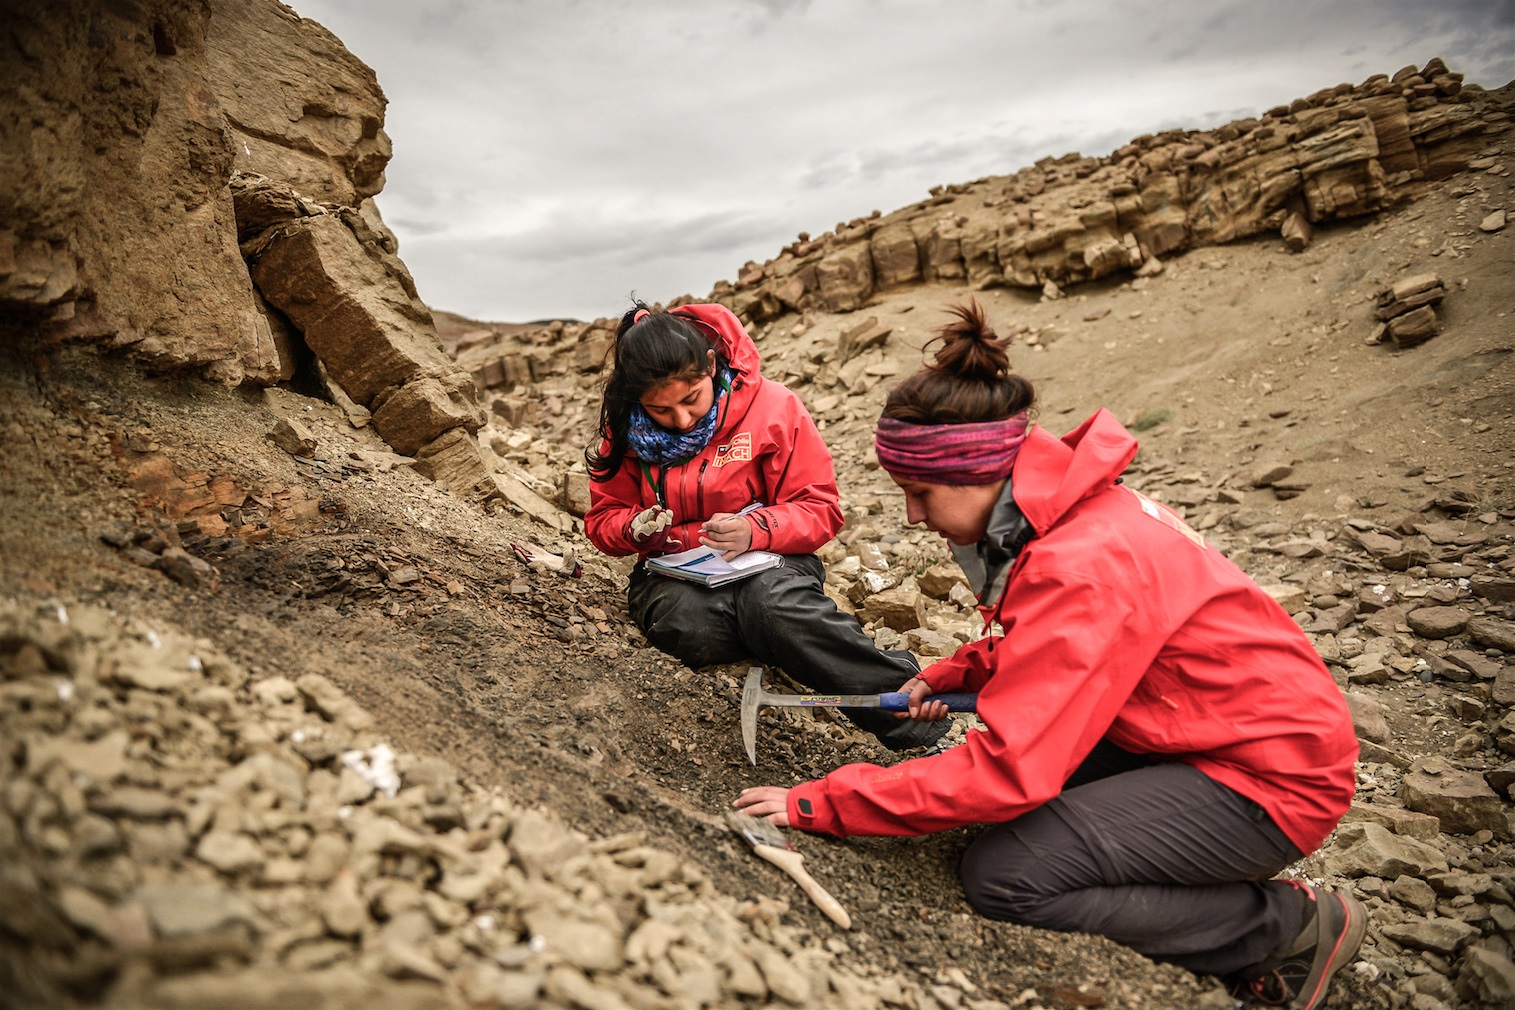 Hallan restos de un dinosaurio semi-articulado en Cerro Guido, región de Magallanes